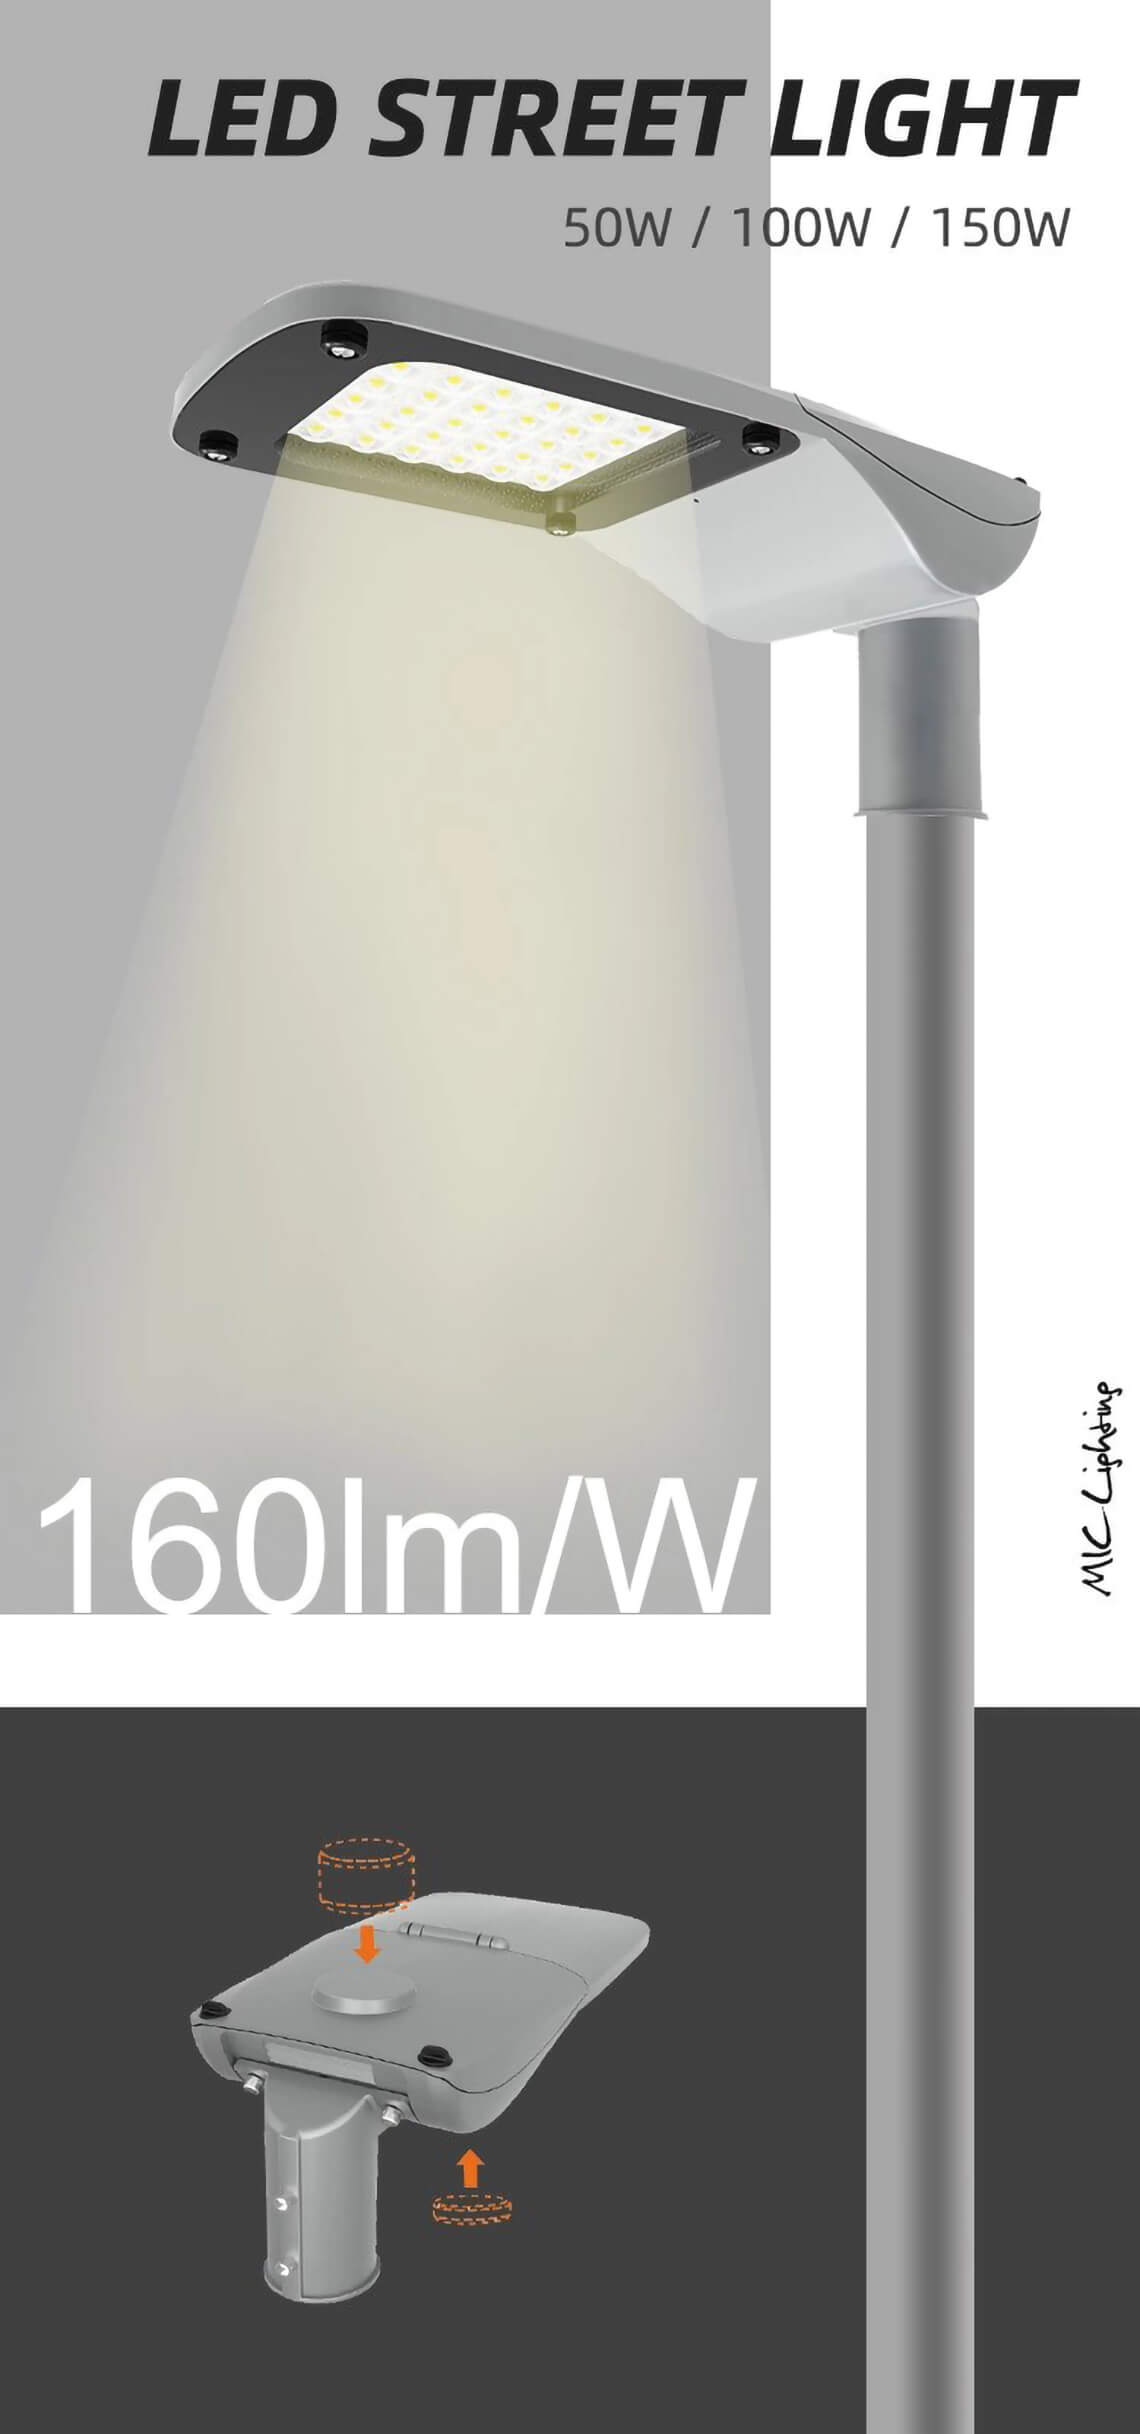 A Series 200w LED